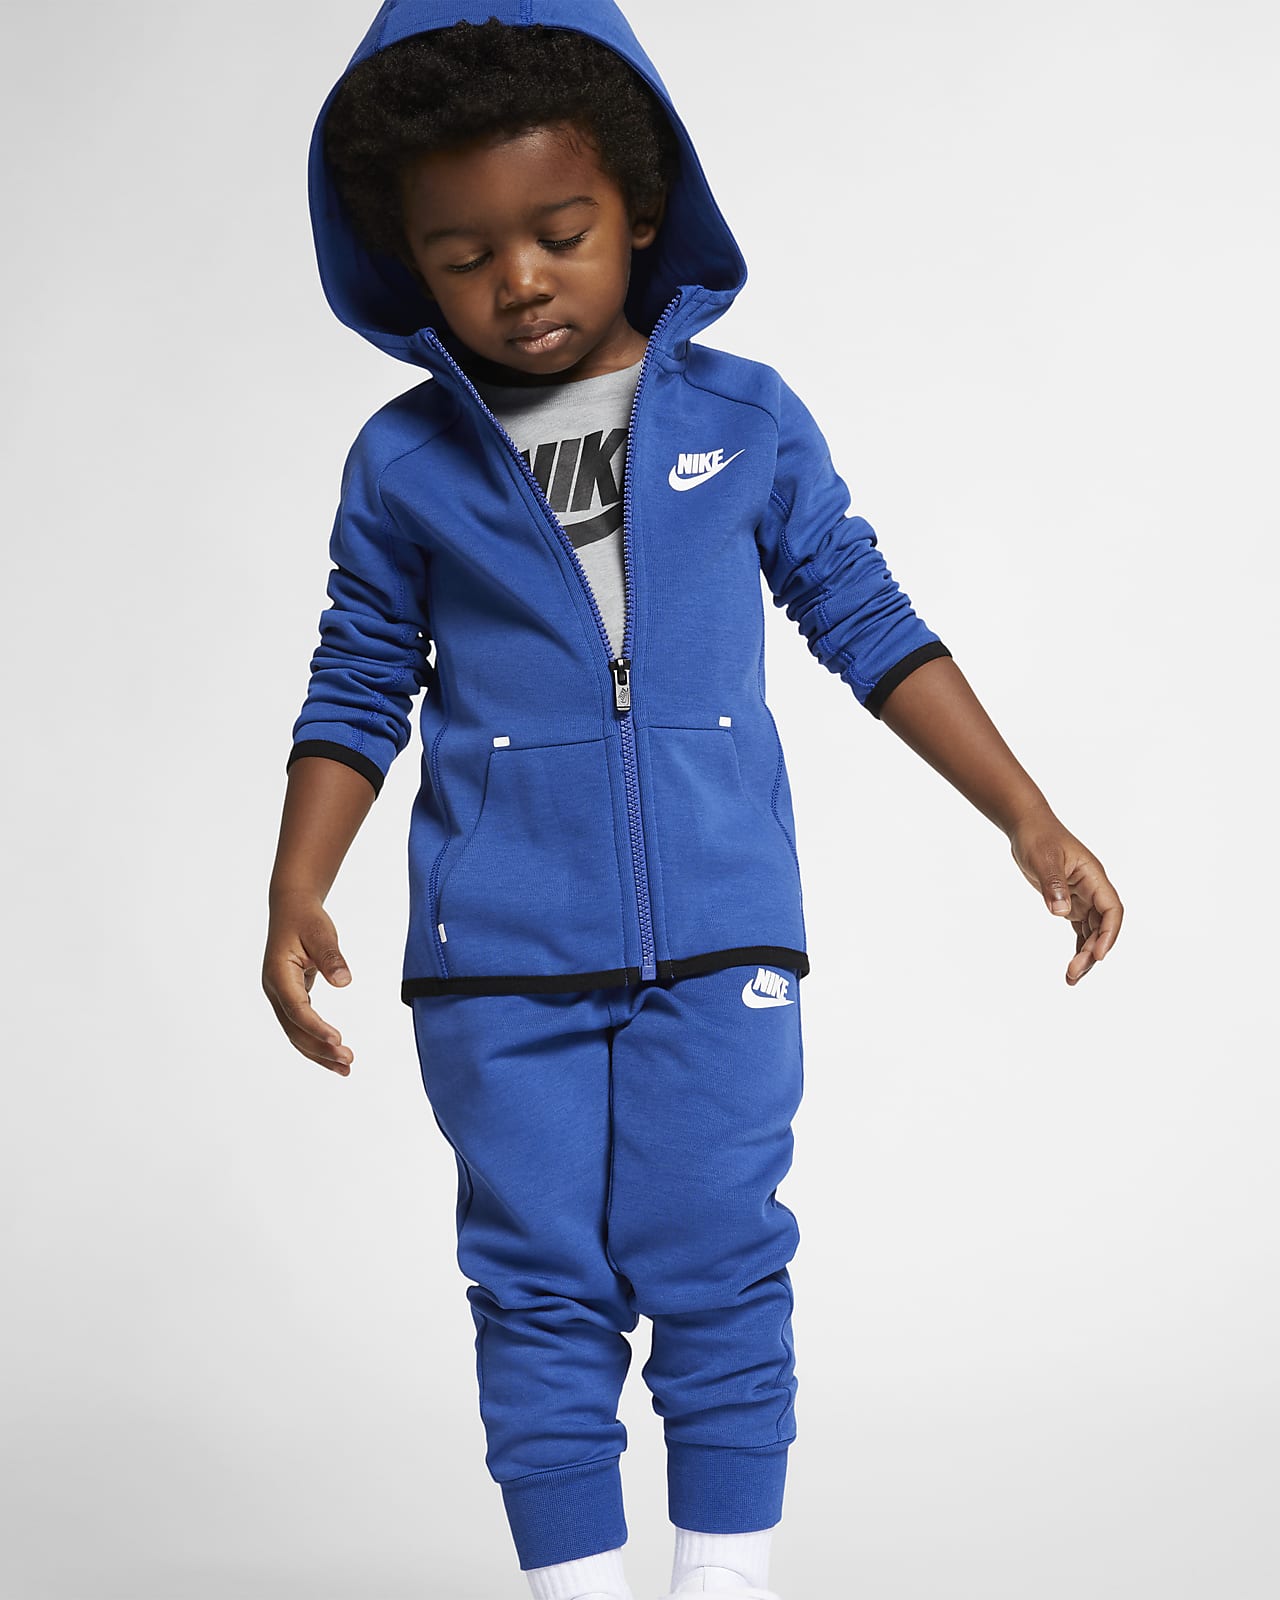 Buy > nike tech baby blue hoodie > in stock